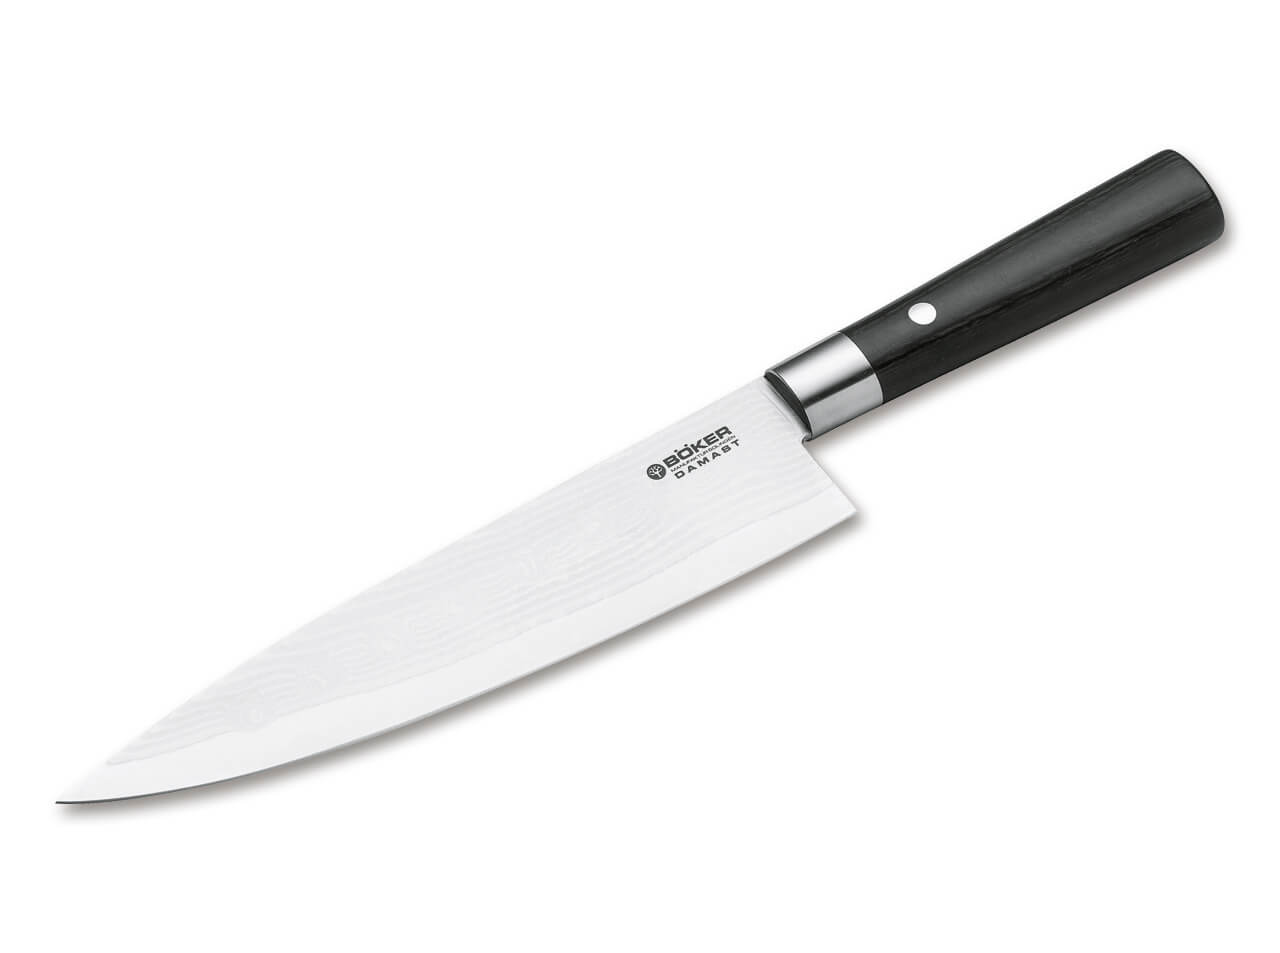 https://www.bokerusa.com/media/image/8d/e9/05/boeker-manufaktur-solingen-damast-black-chef-s-knife-large-130421dam.jpg